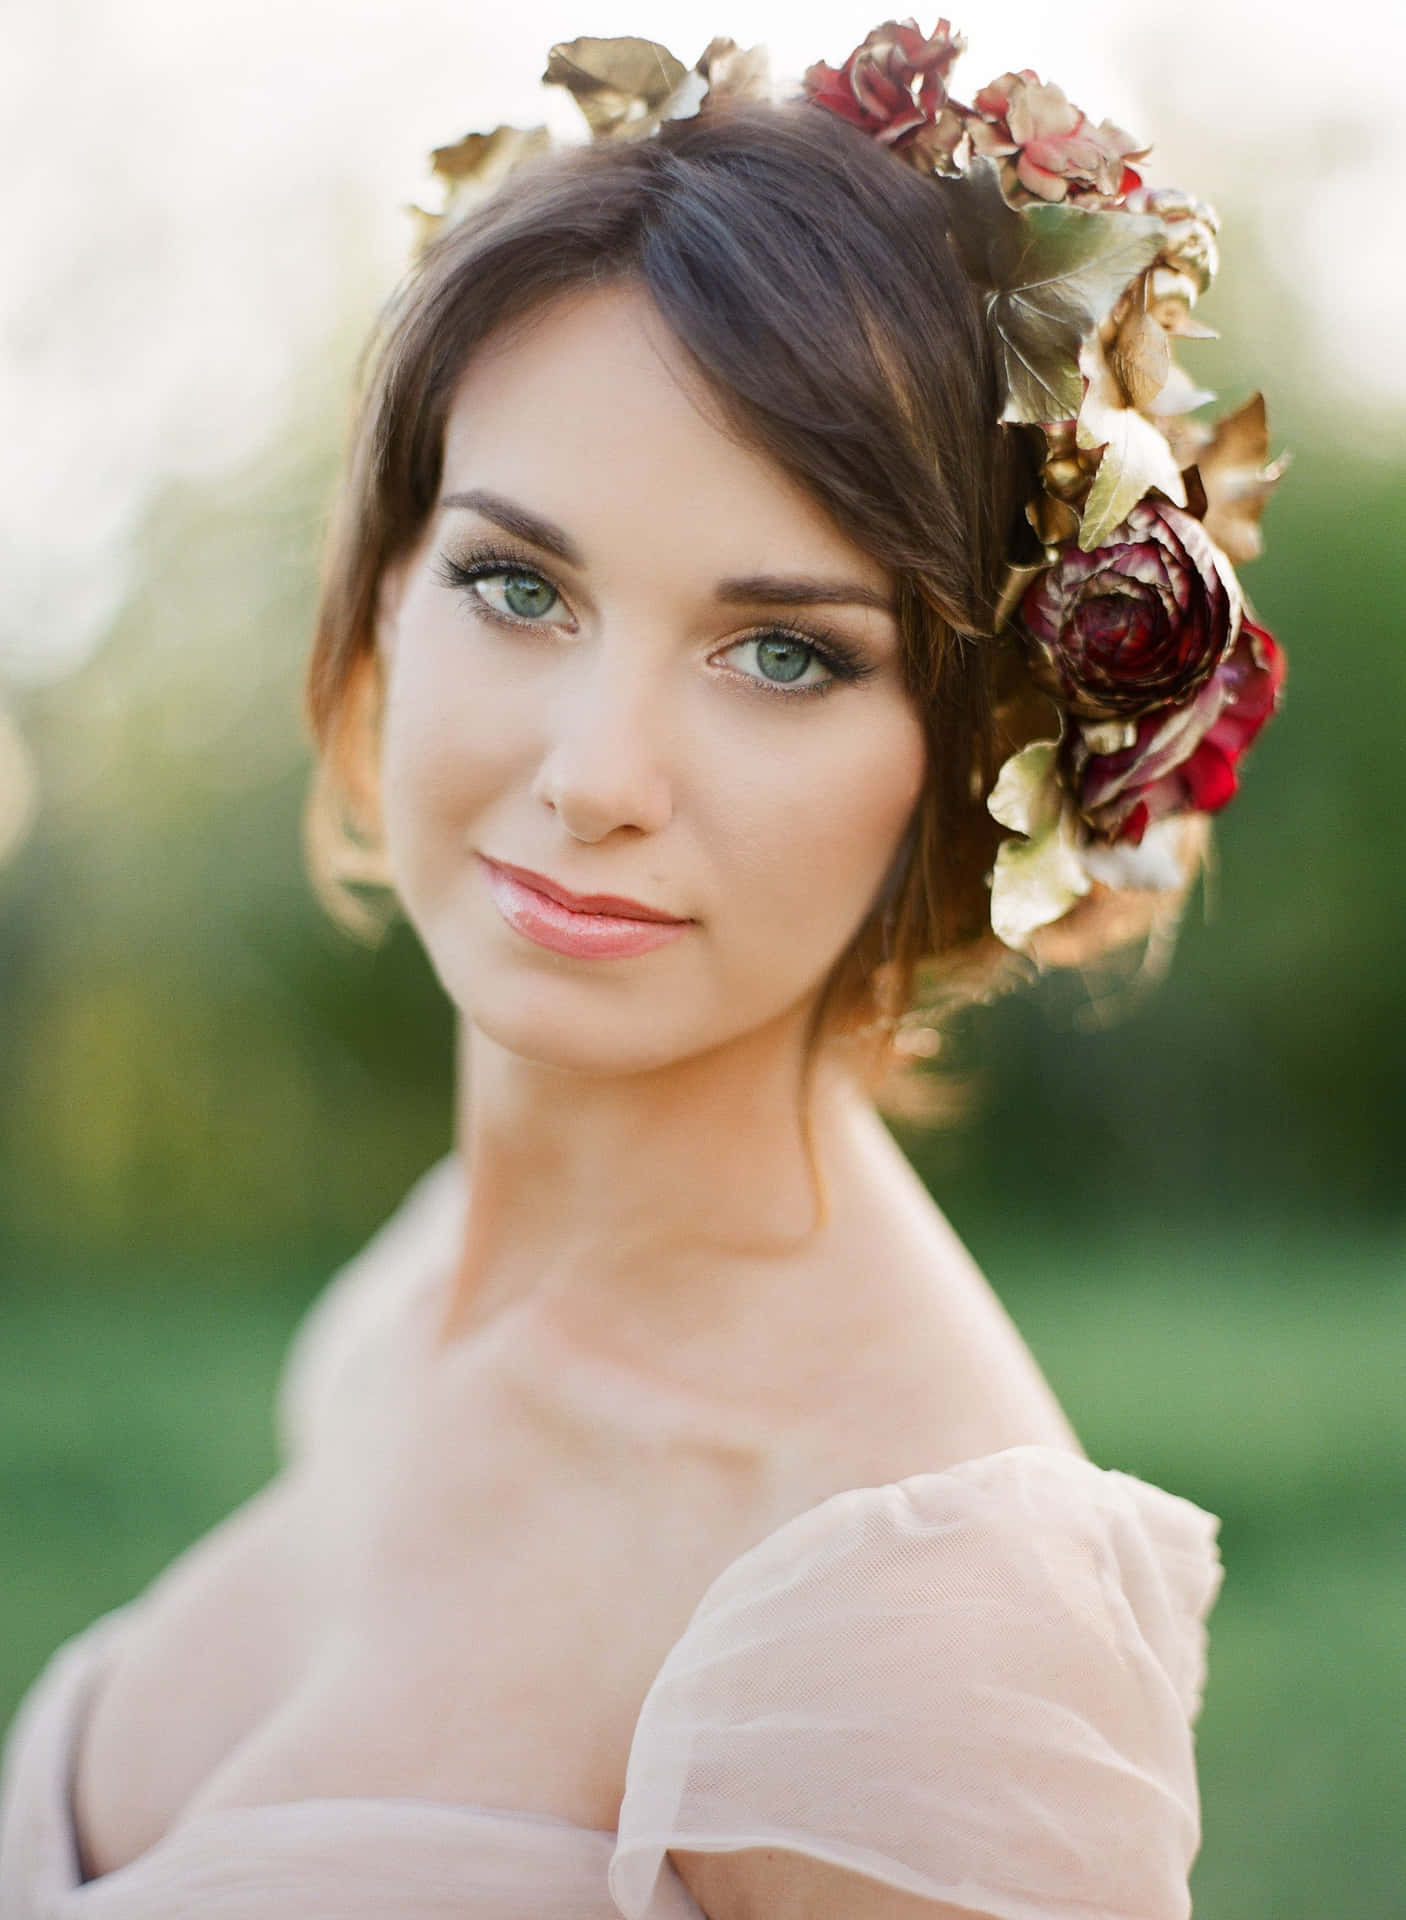 A Beautiful Woman Wearing A Flower Crown